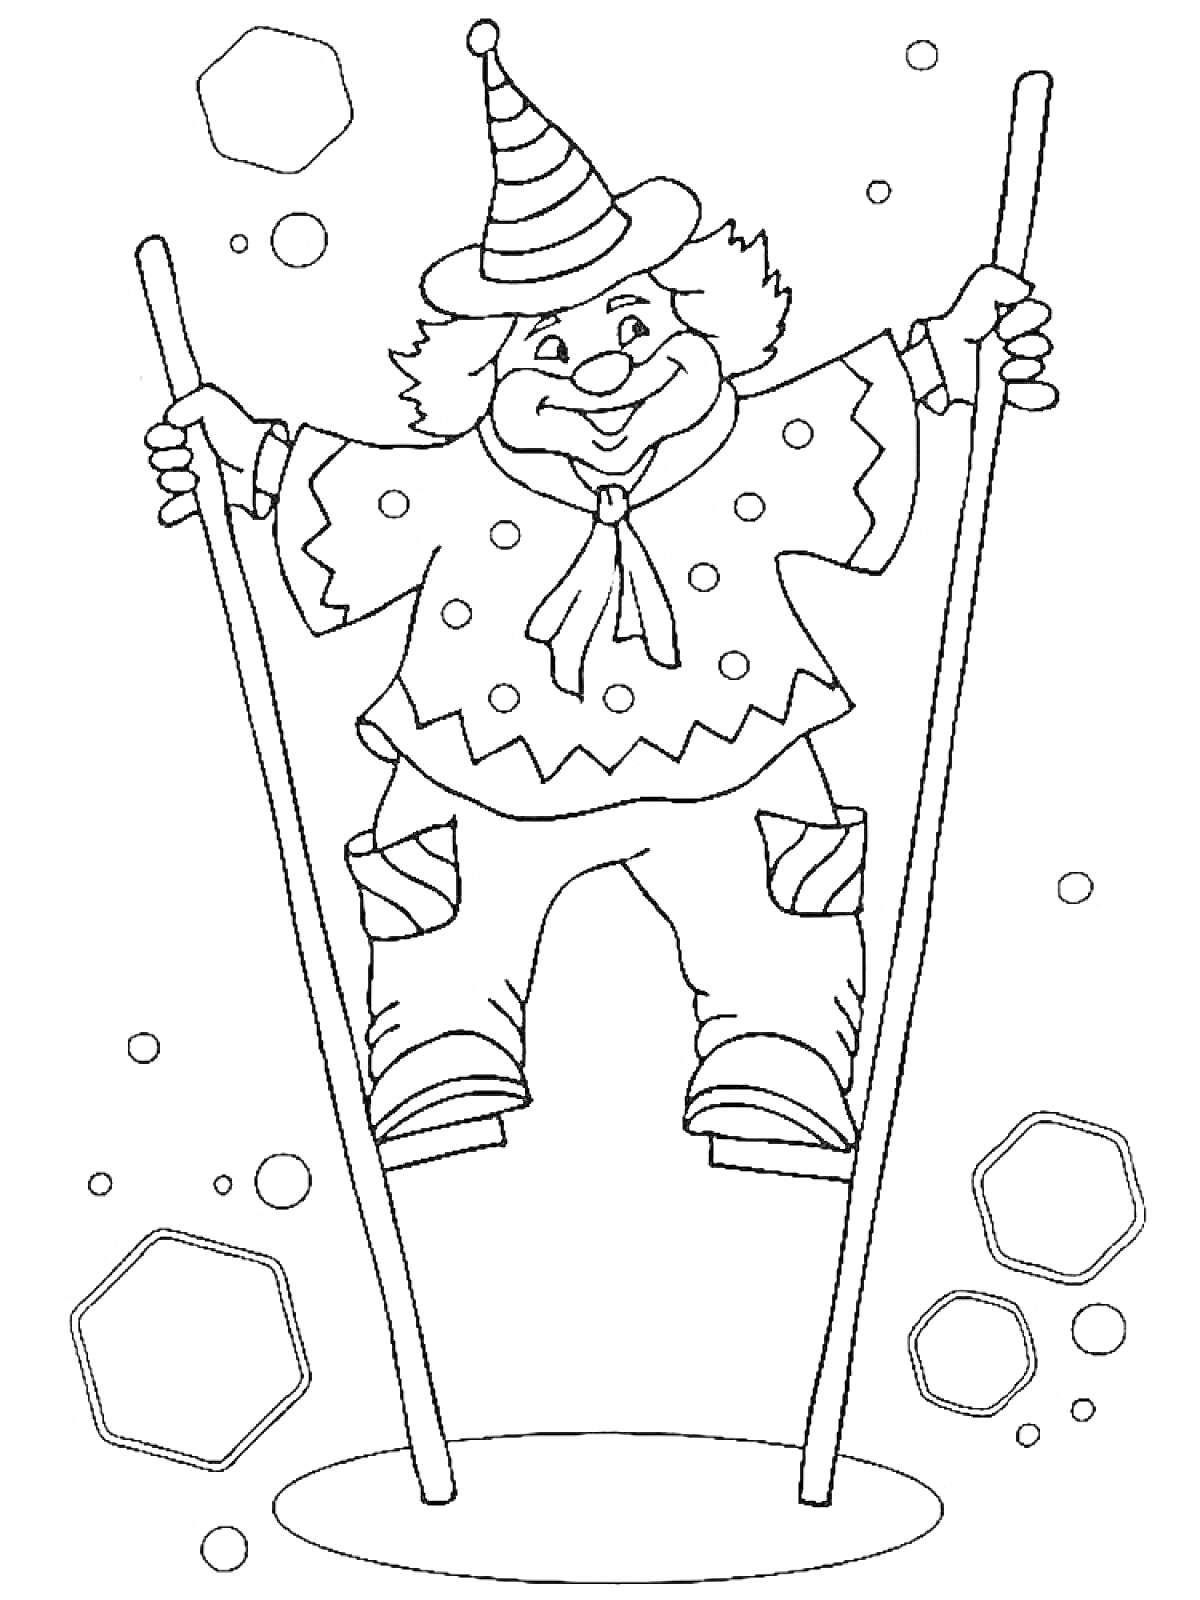 Раскраска Клоун на ходулях в шляпе с шарами и геометрическими фигурами